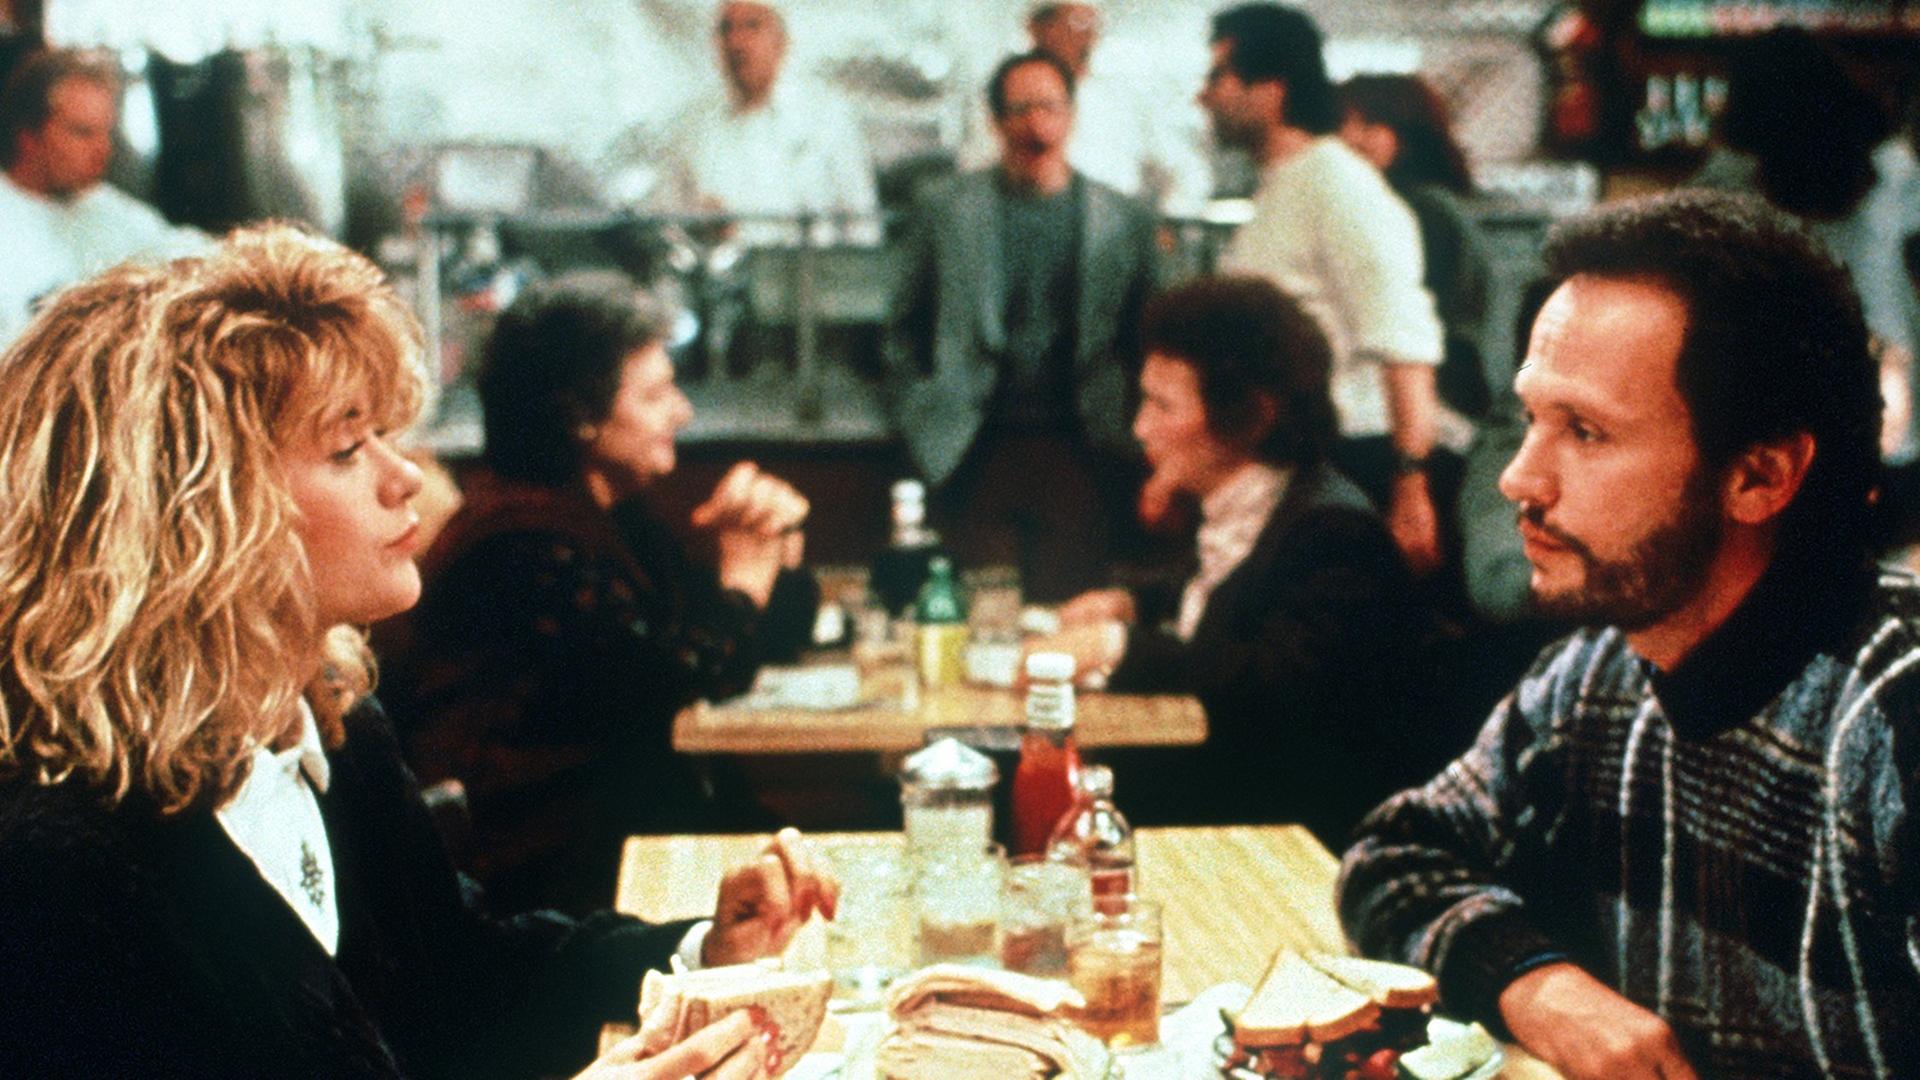 Harry Burns (Billy Crystal) sitzt im Filmklassiker "Harry und Sally" von 1989 Sally Albright (Meg Ryan) im Restaurant gegenüber.